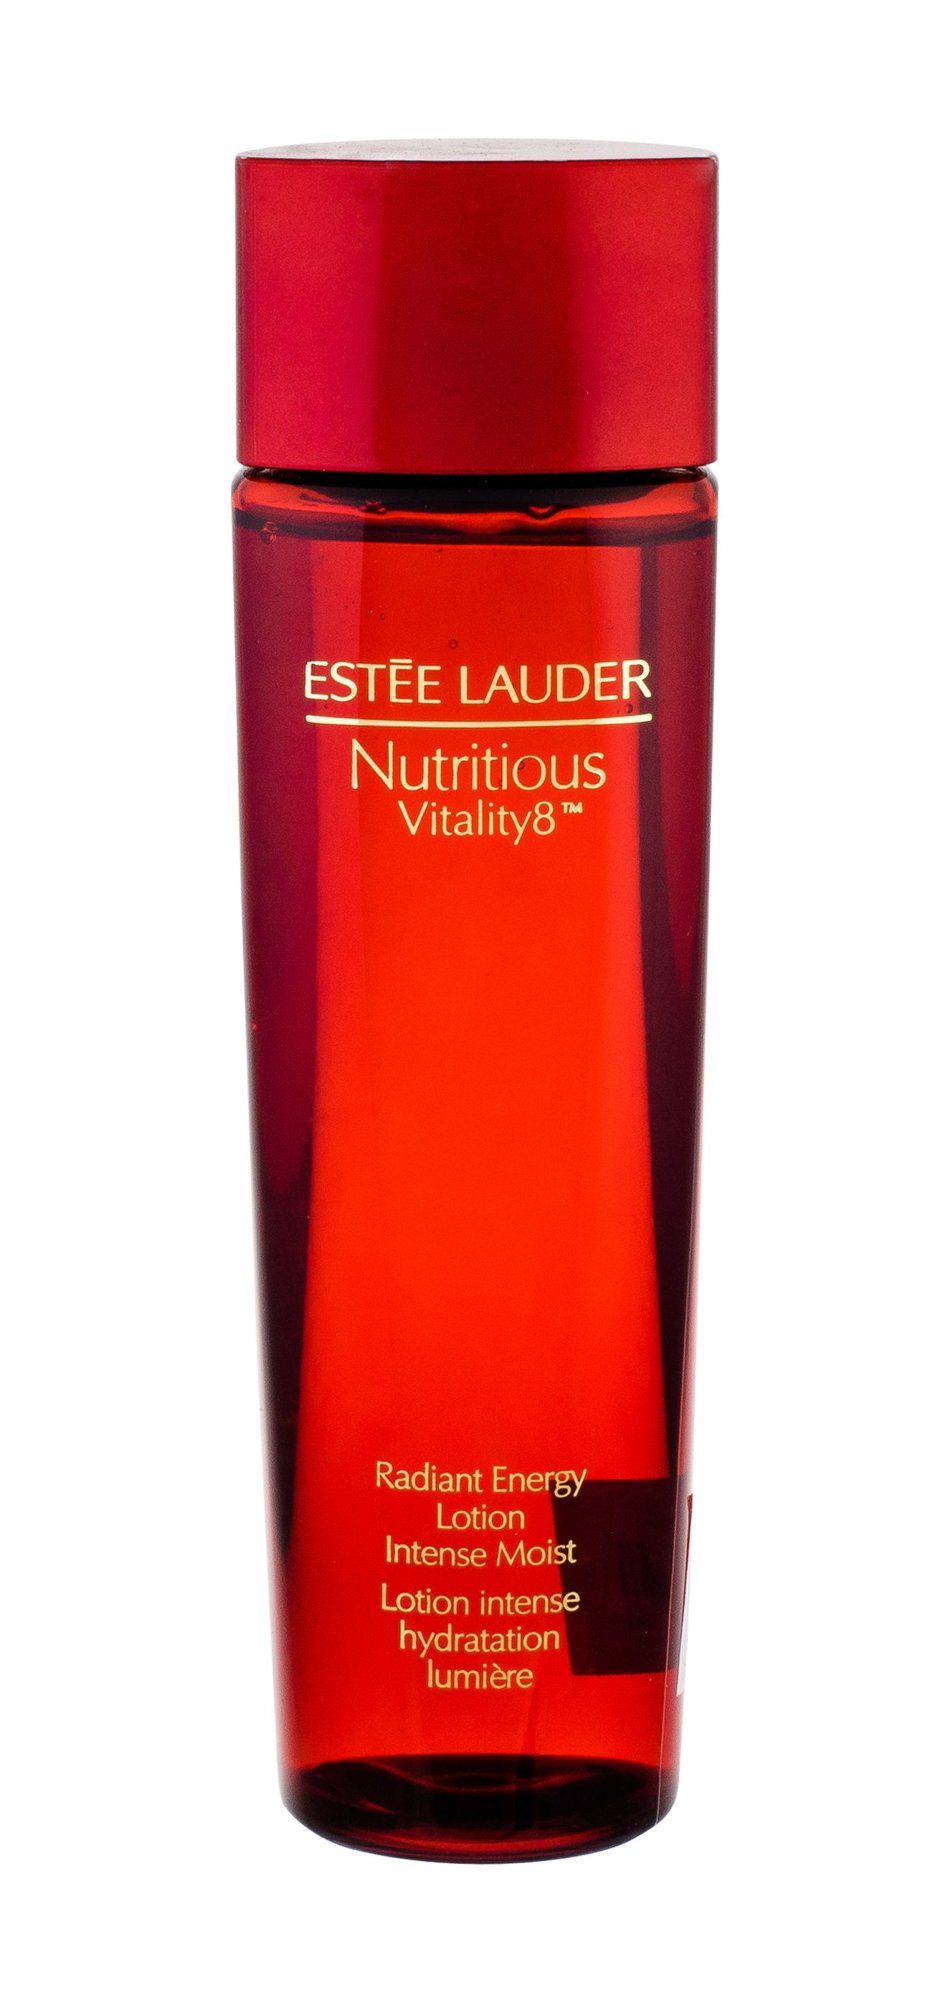 Esteé Lauder Nutritious Vitality8 200ml valomasis vanduo veidui Testeris